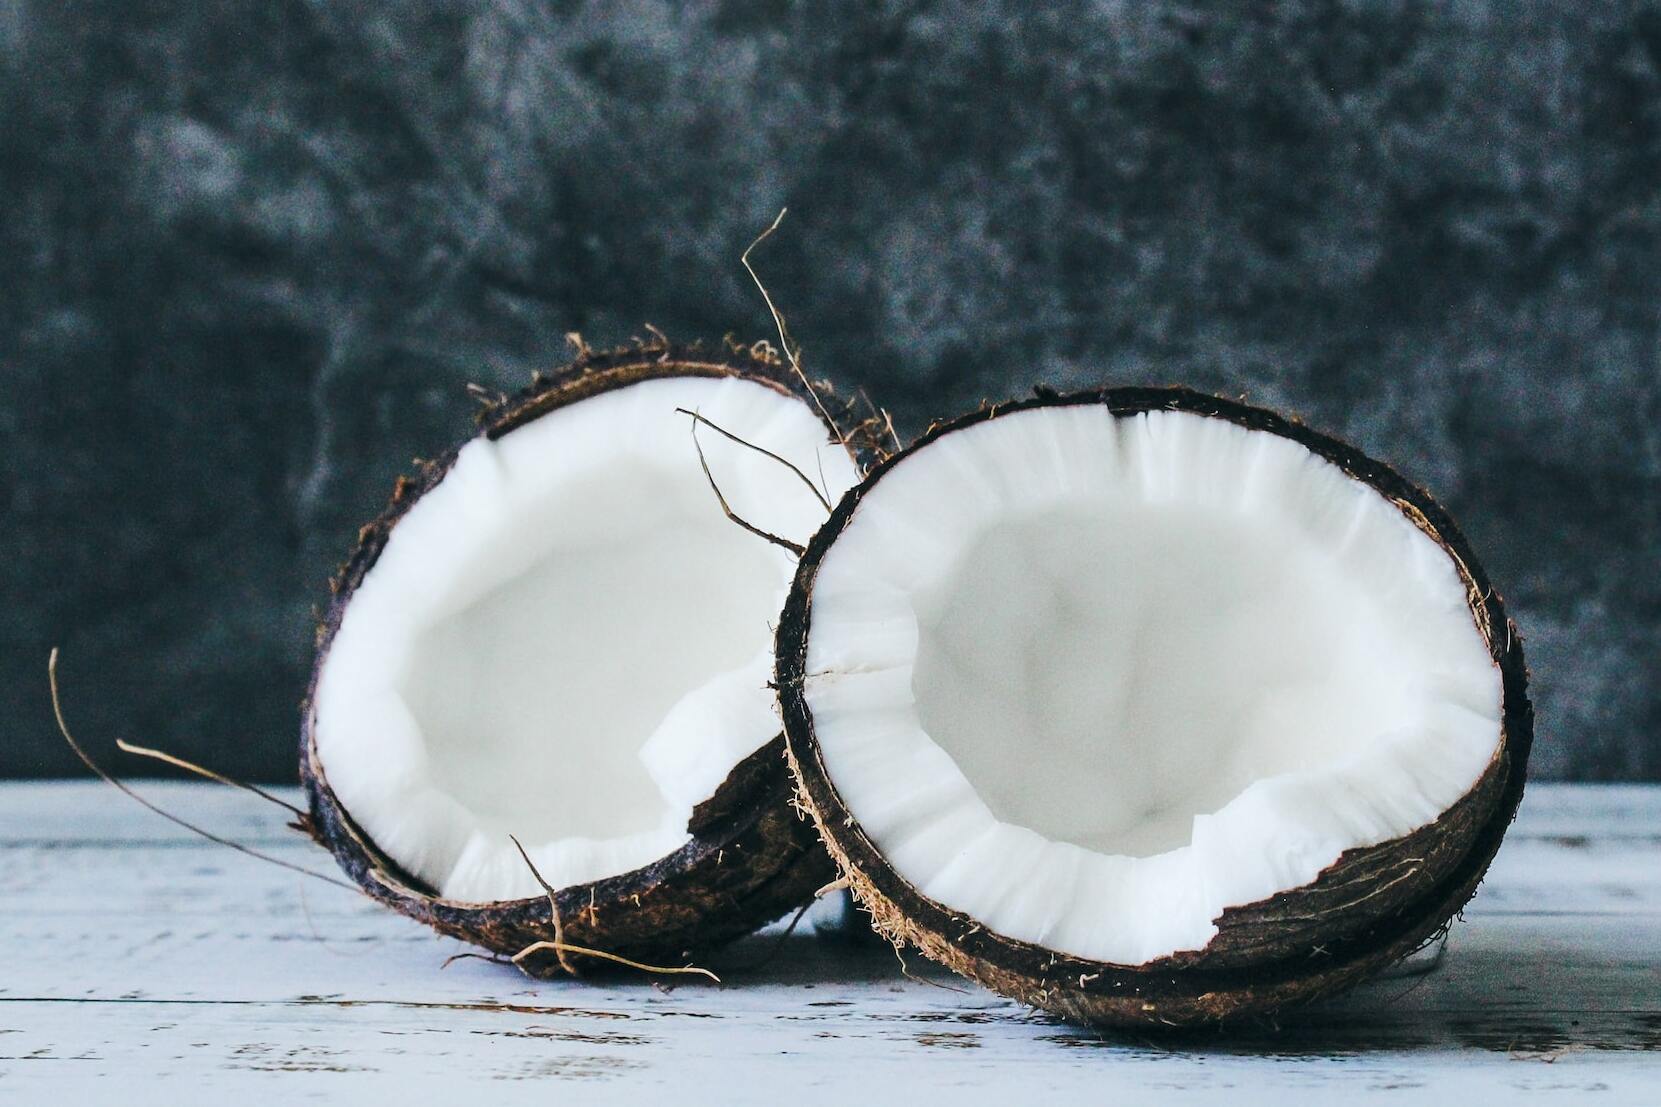 L'huile de coco, un bon allié pour des dents blanches